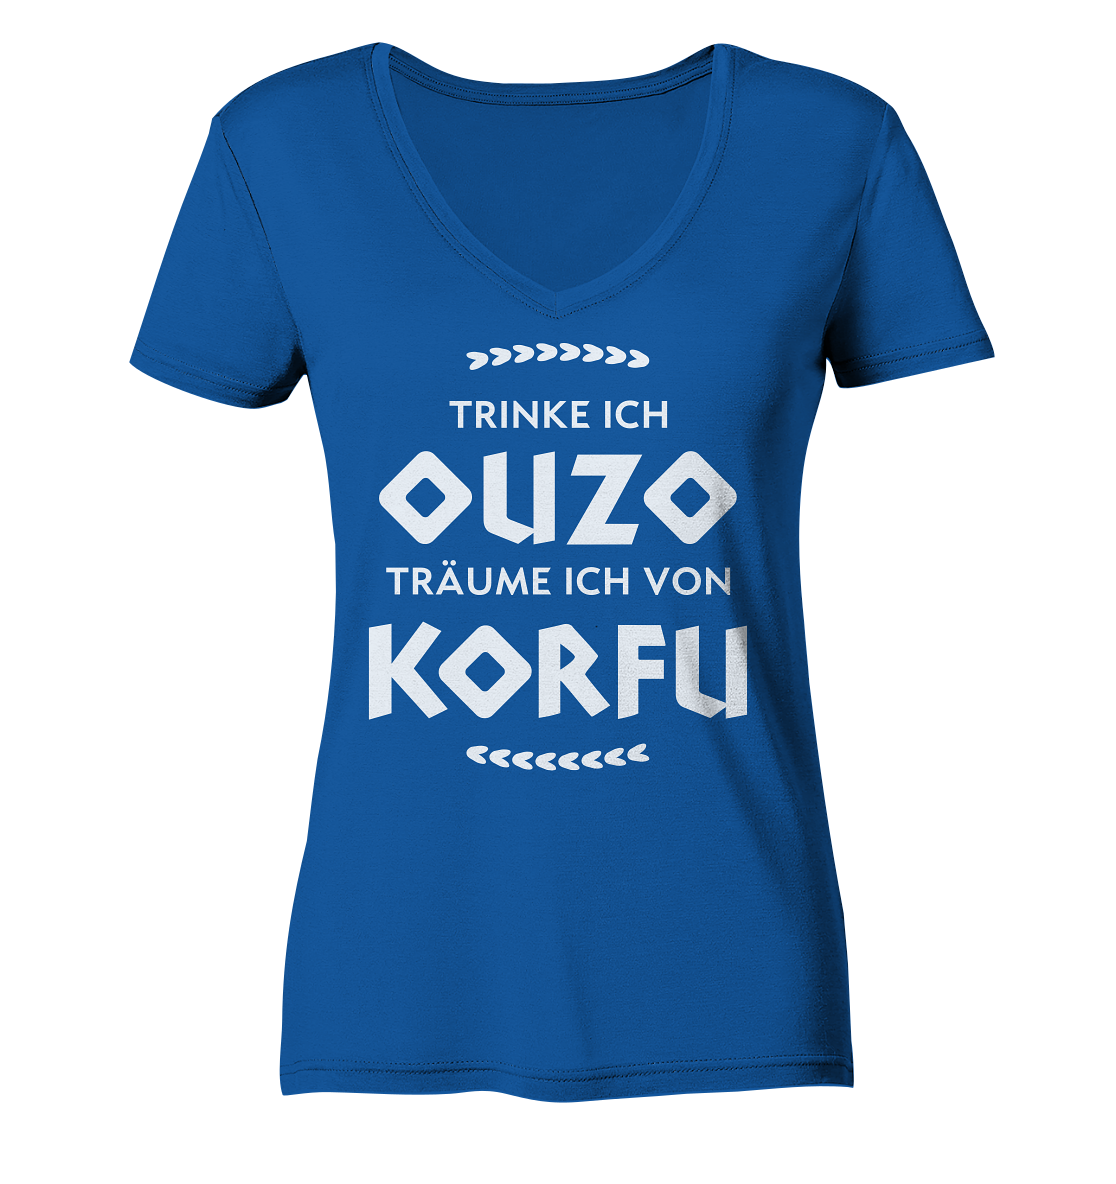 Trinke ich Ouzo träume ich von Korfu - Ladies Organic V-Neck Shirt